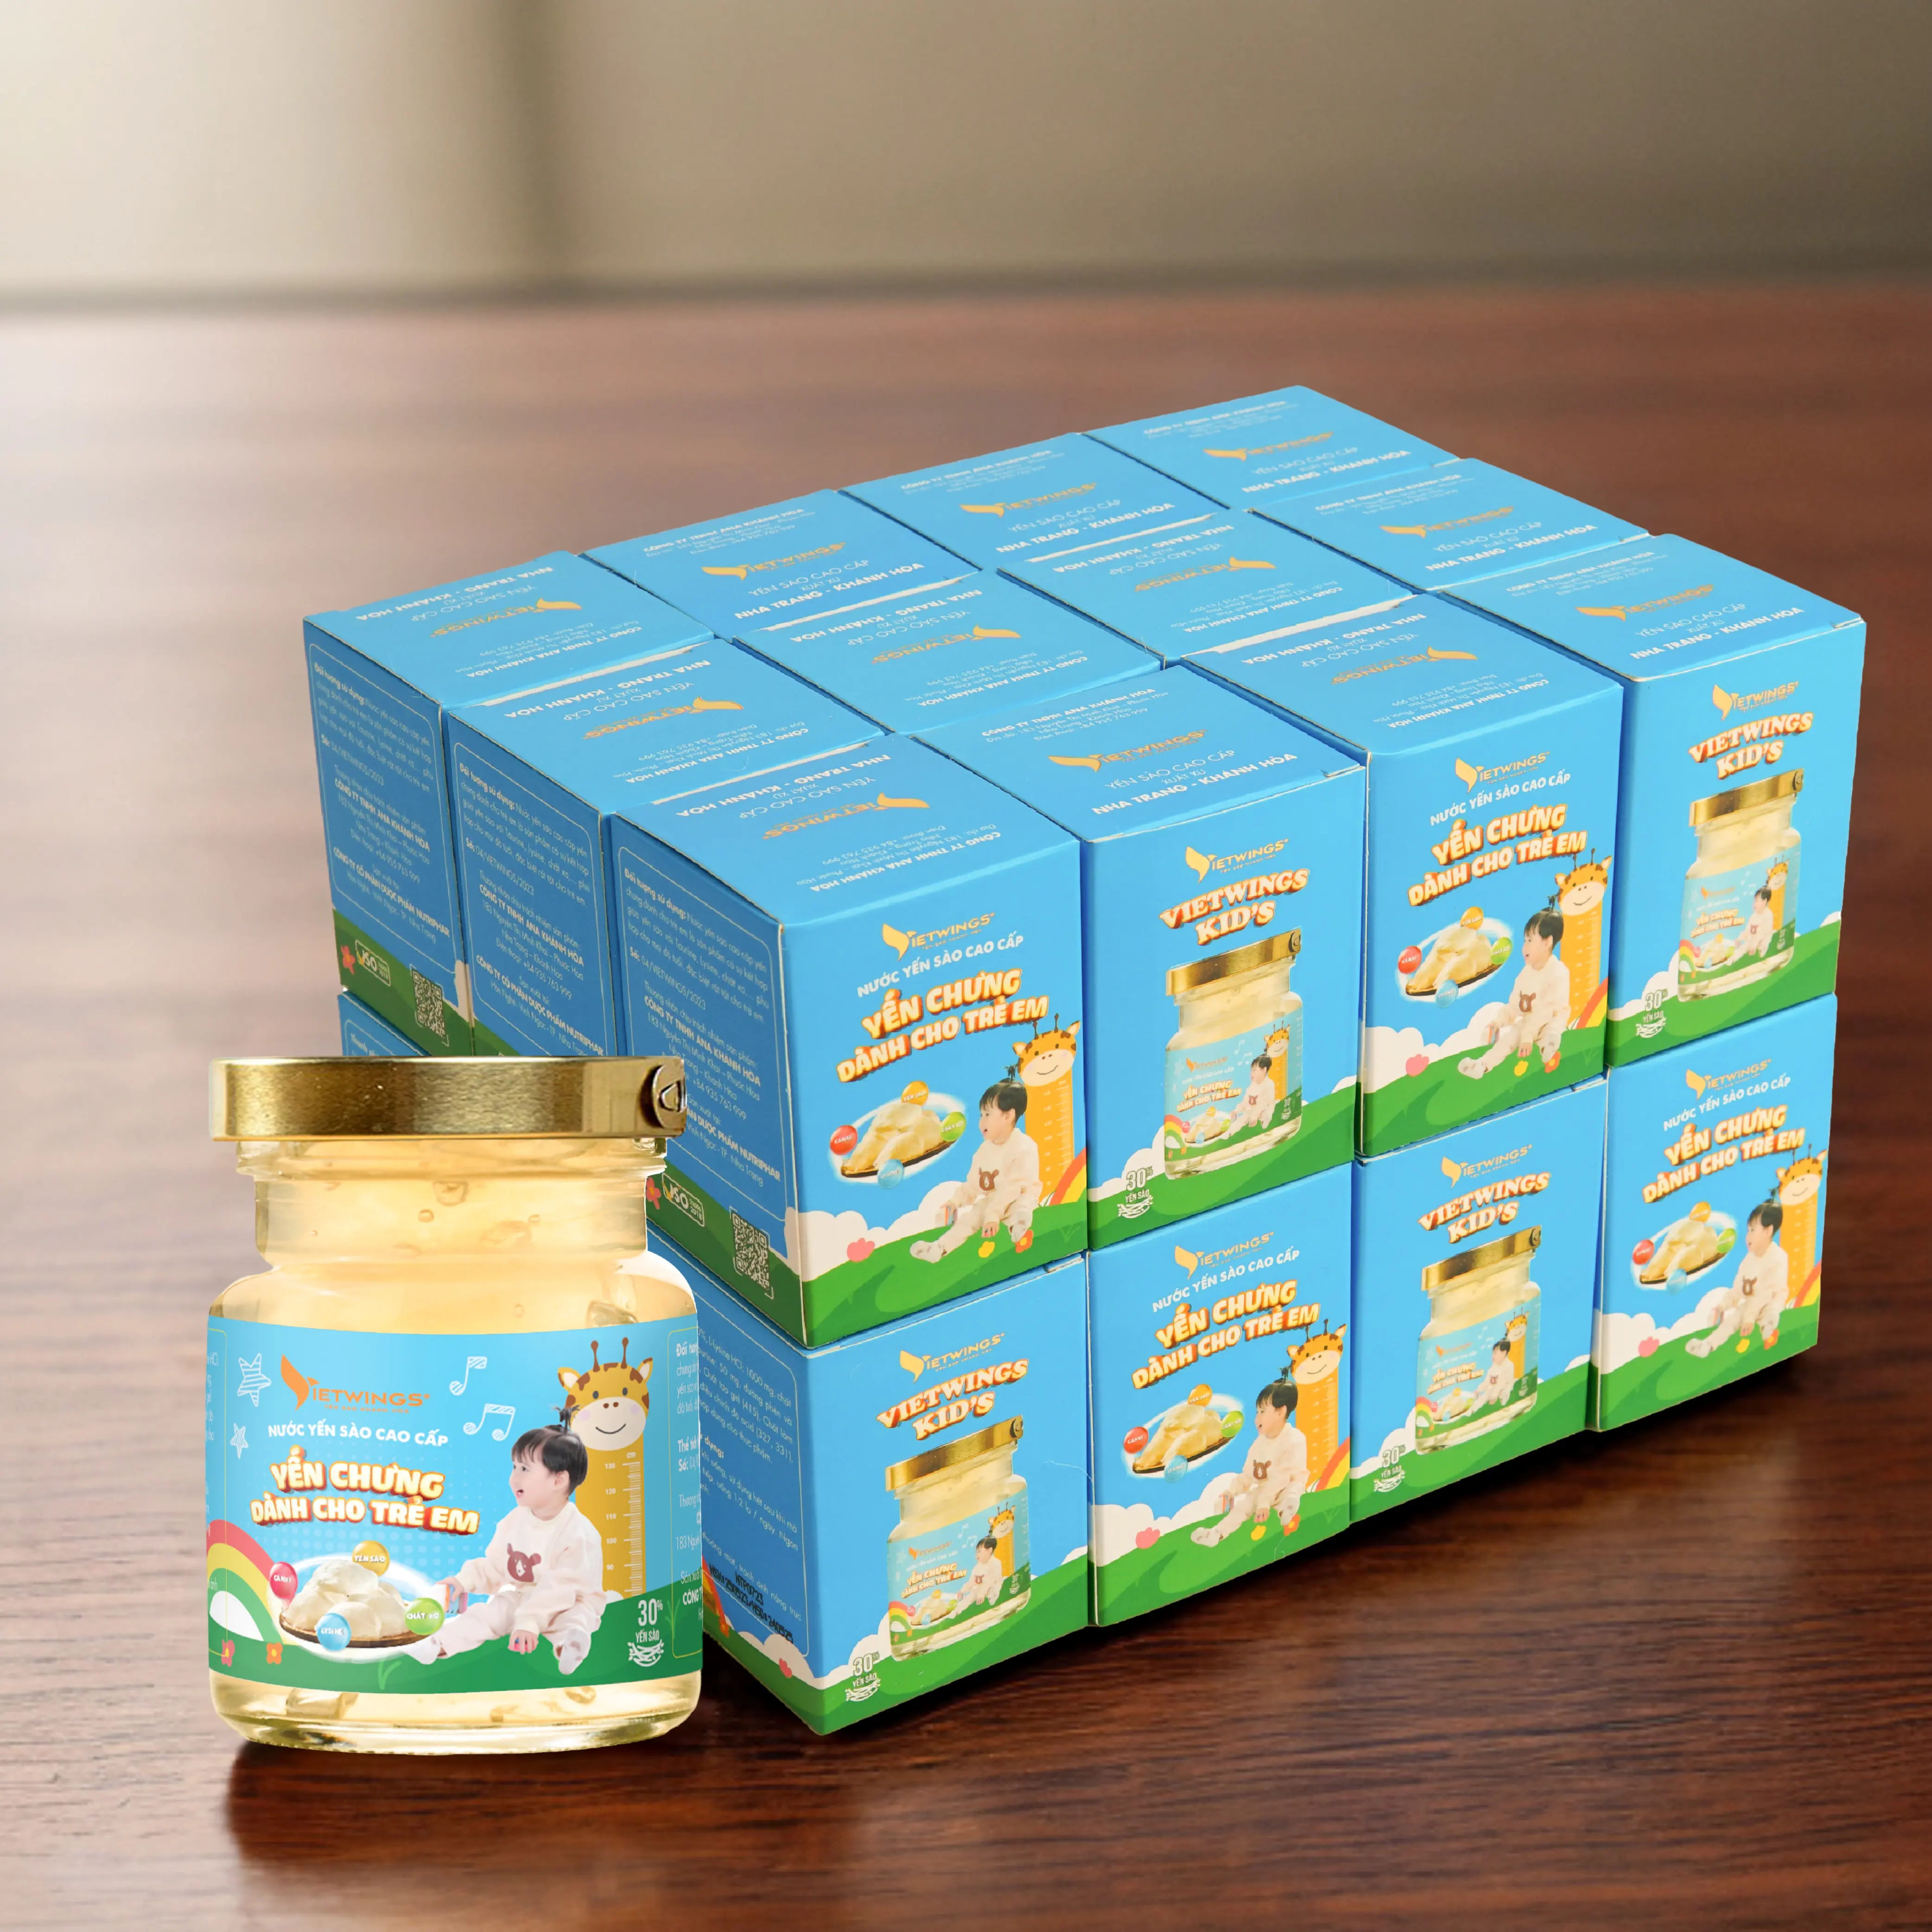 OEM Bird Nest Drinks Vietnam Für Kinder Kunden spezifische Verpackung 70ml Food Nutritional Supplement Food Beverage